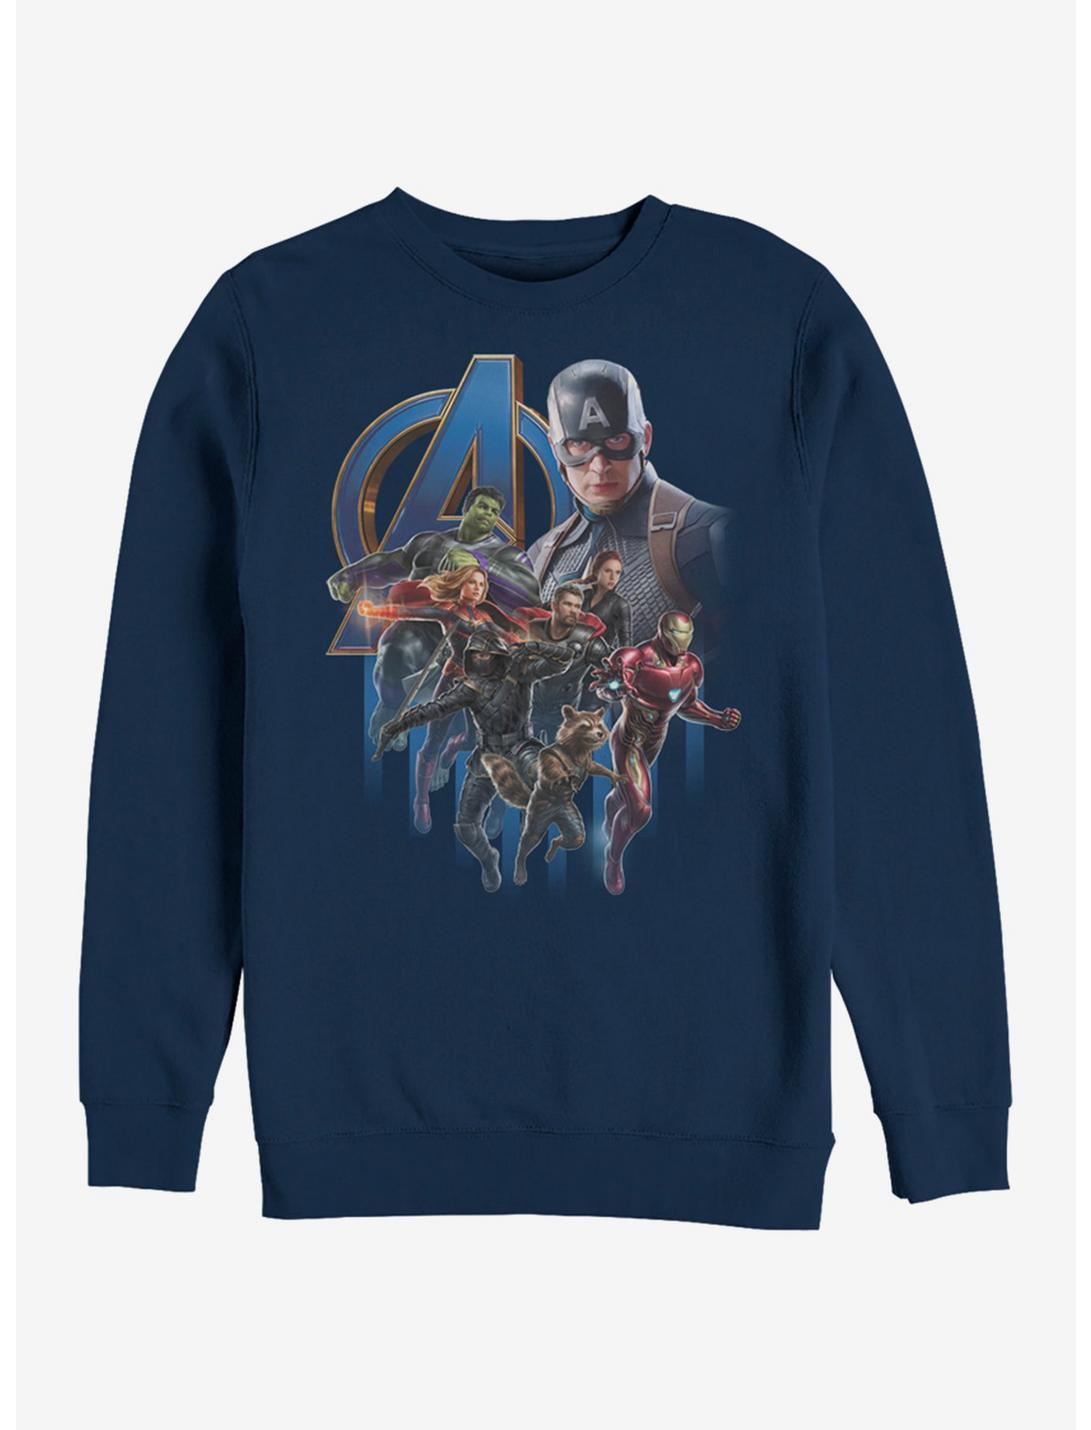 Marvel Avengers: Endgame Avengers Group Poster Navy Blue Sweatshirt, NAVY, hi-res